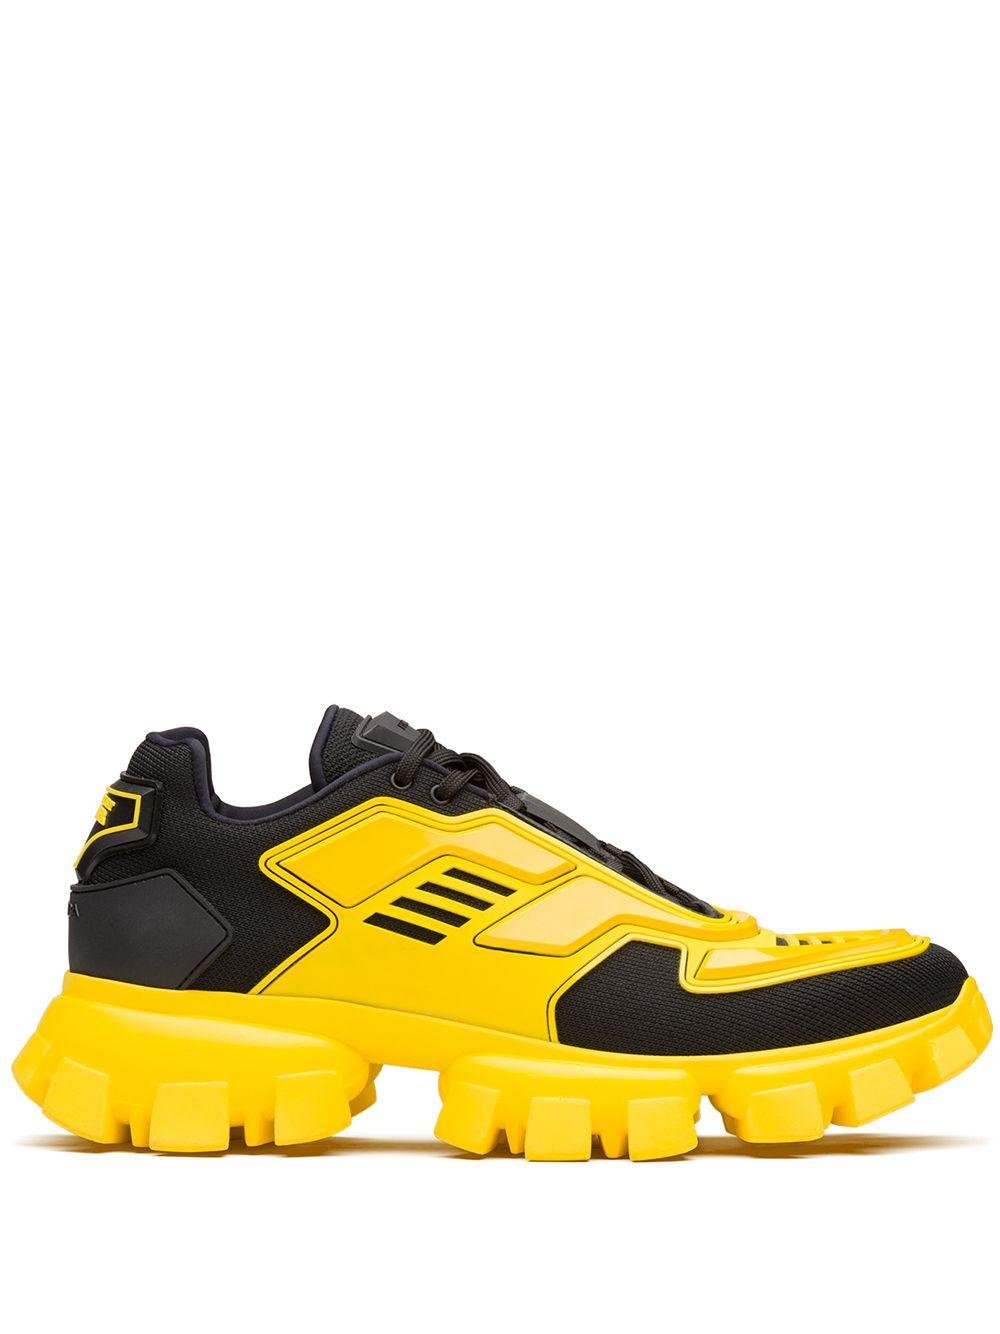 Prada Cloudbust Thunder Sneakers in Yellow for Men